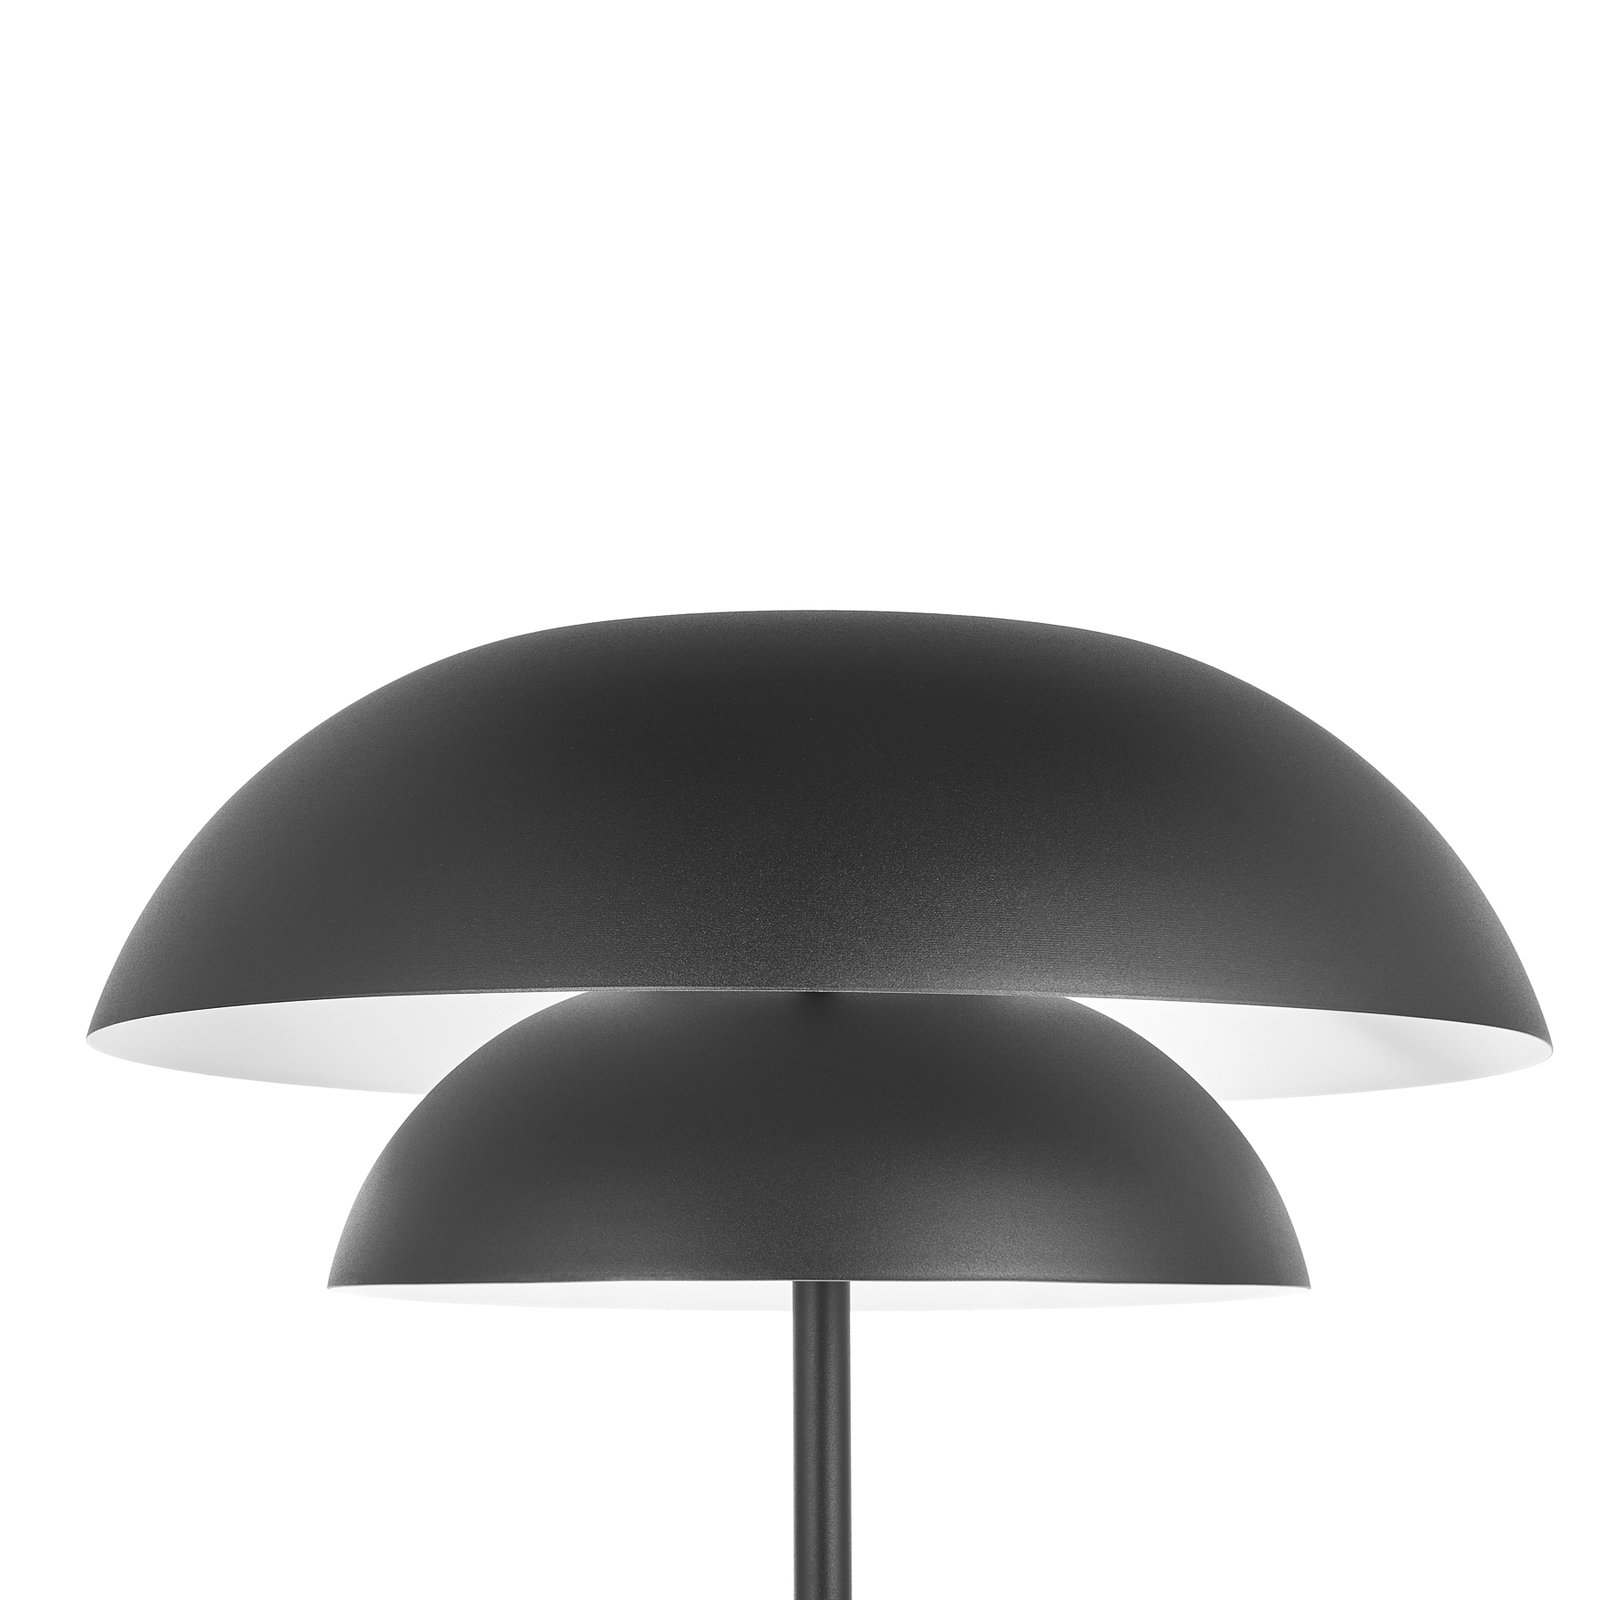 Lucande Kellina floor lamp in black